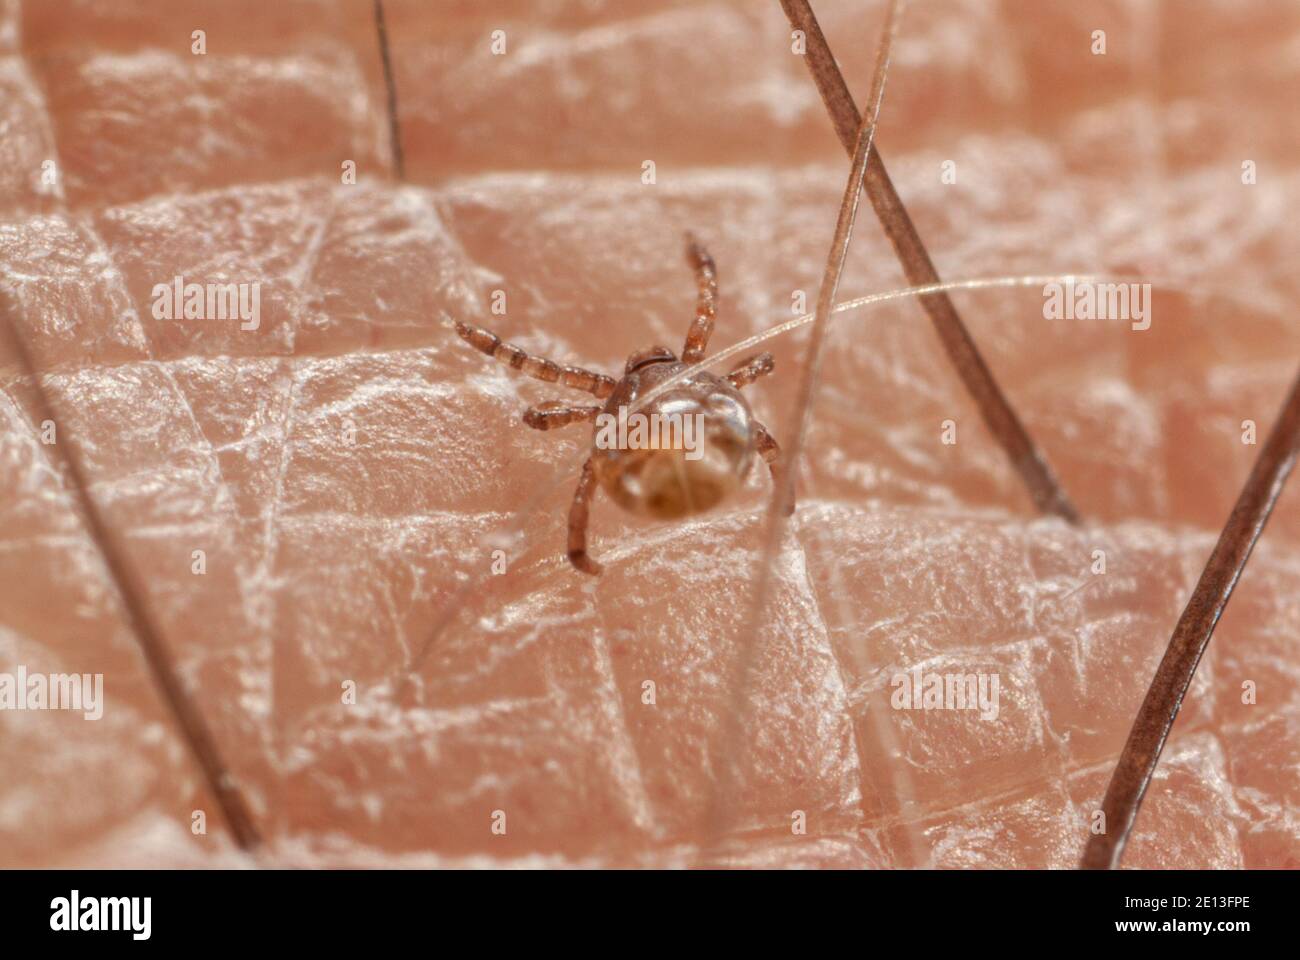 Tick larva on skin Stock Photo